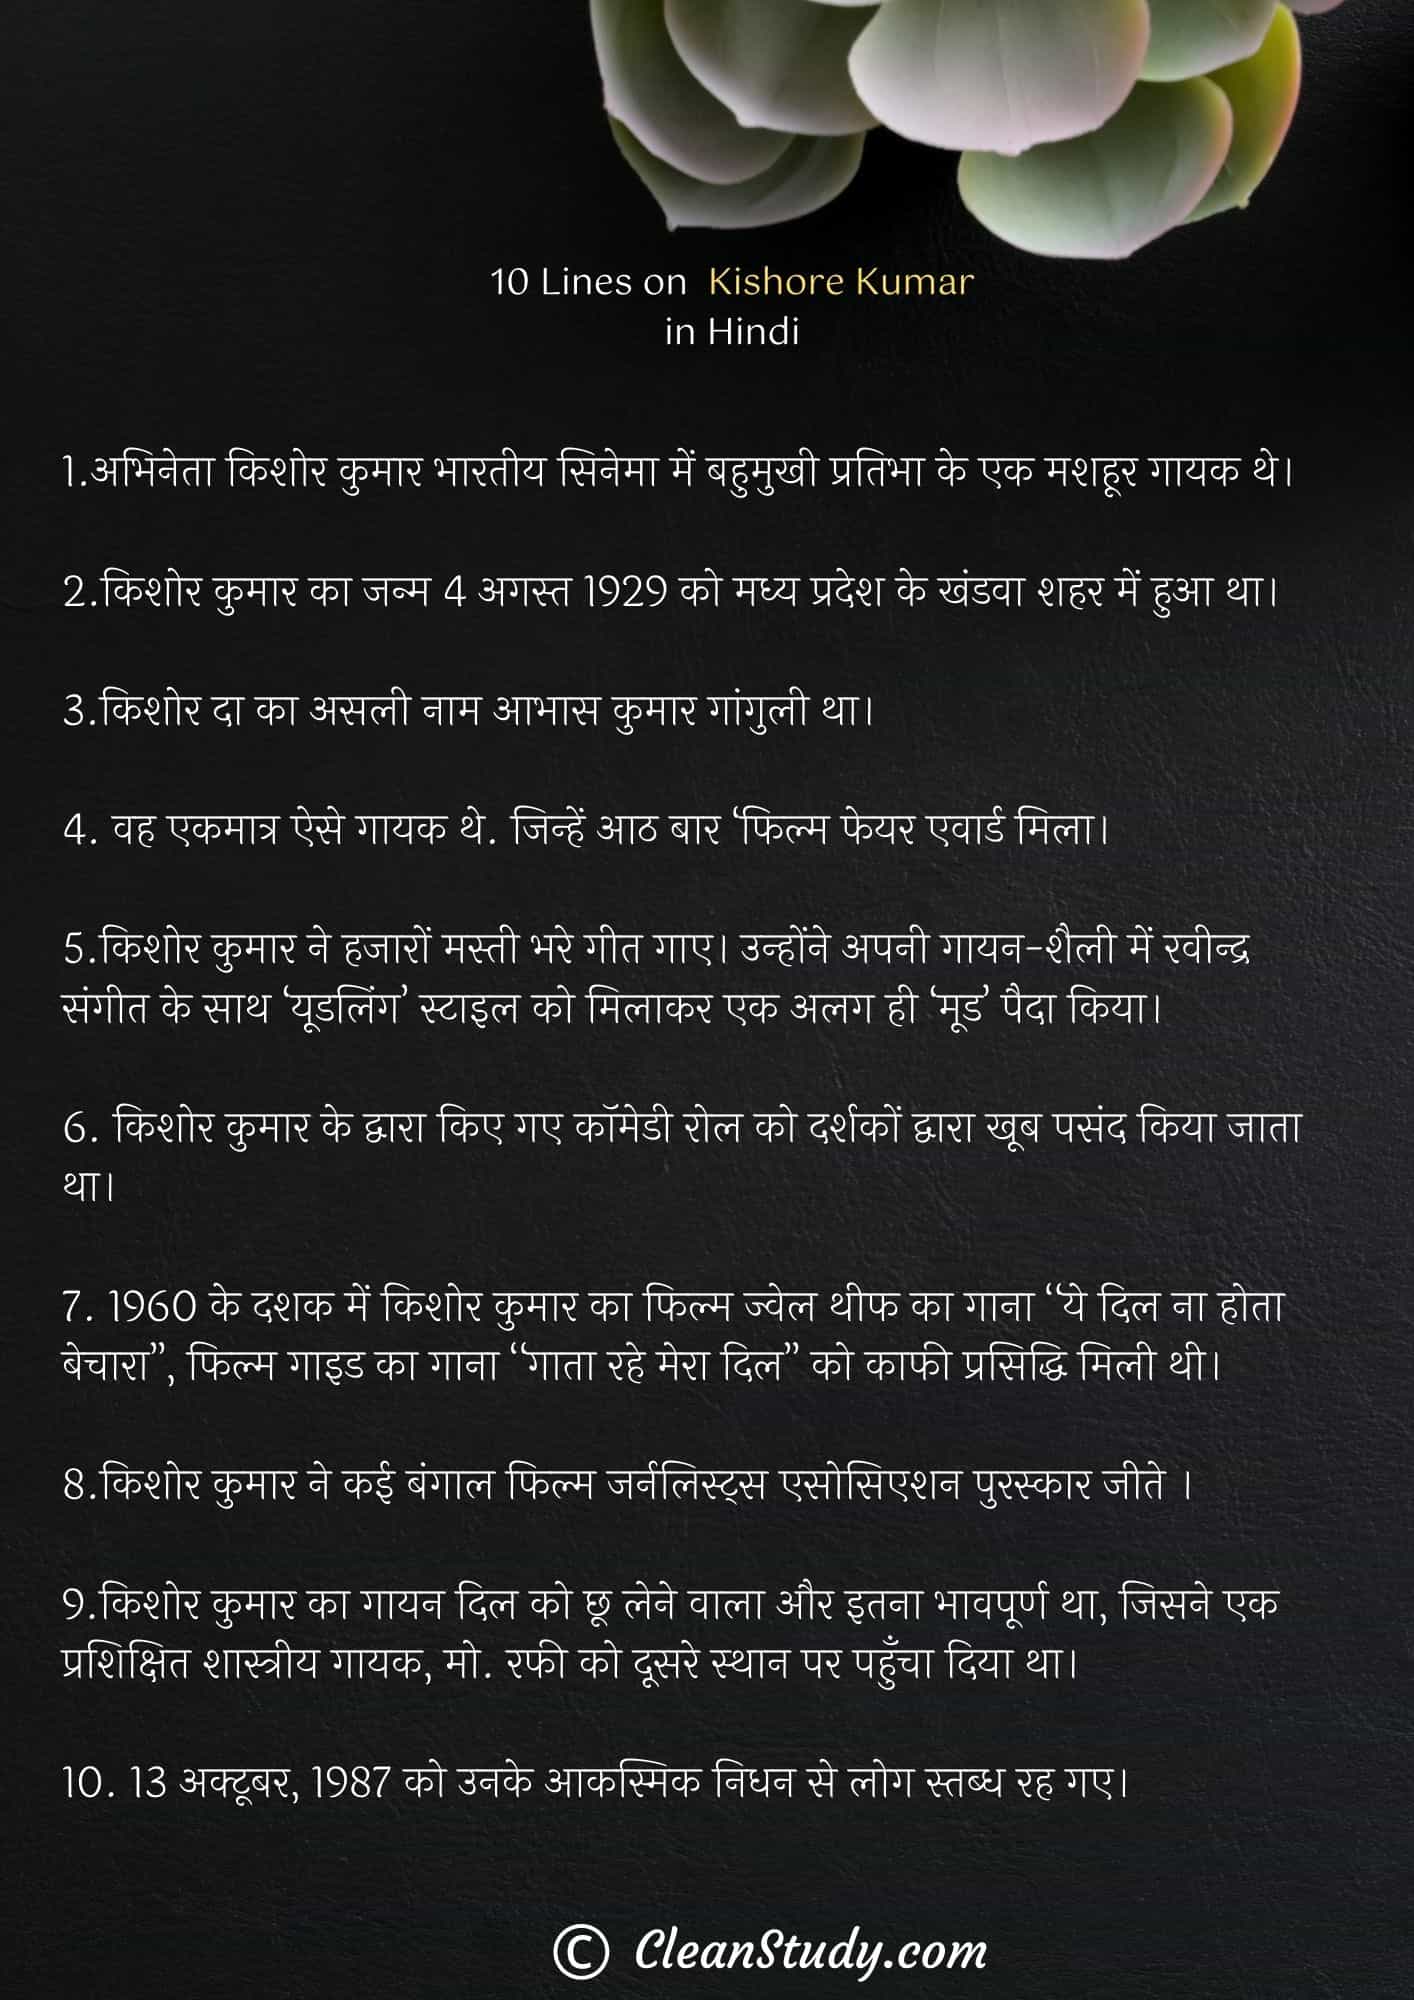 10 Lines on Kishore Kumar in Hindi